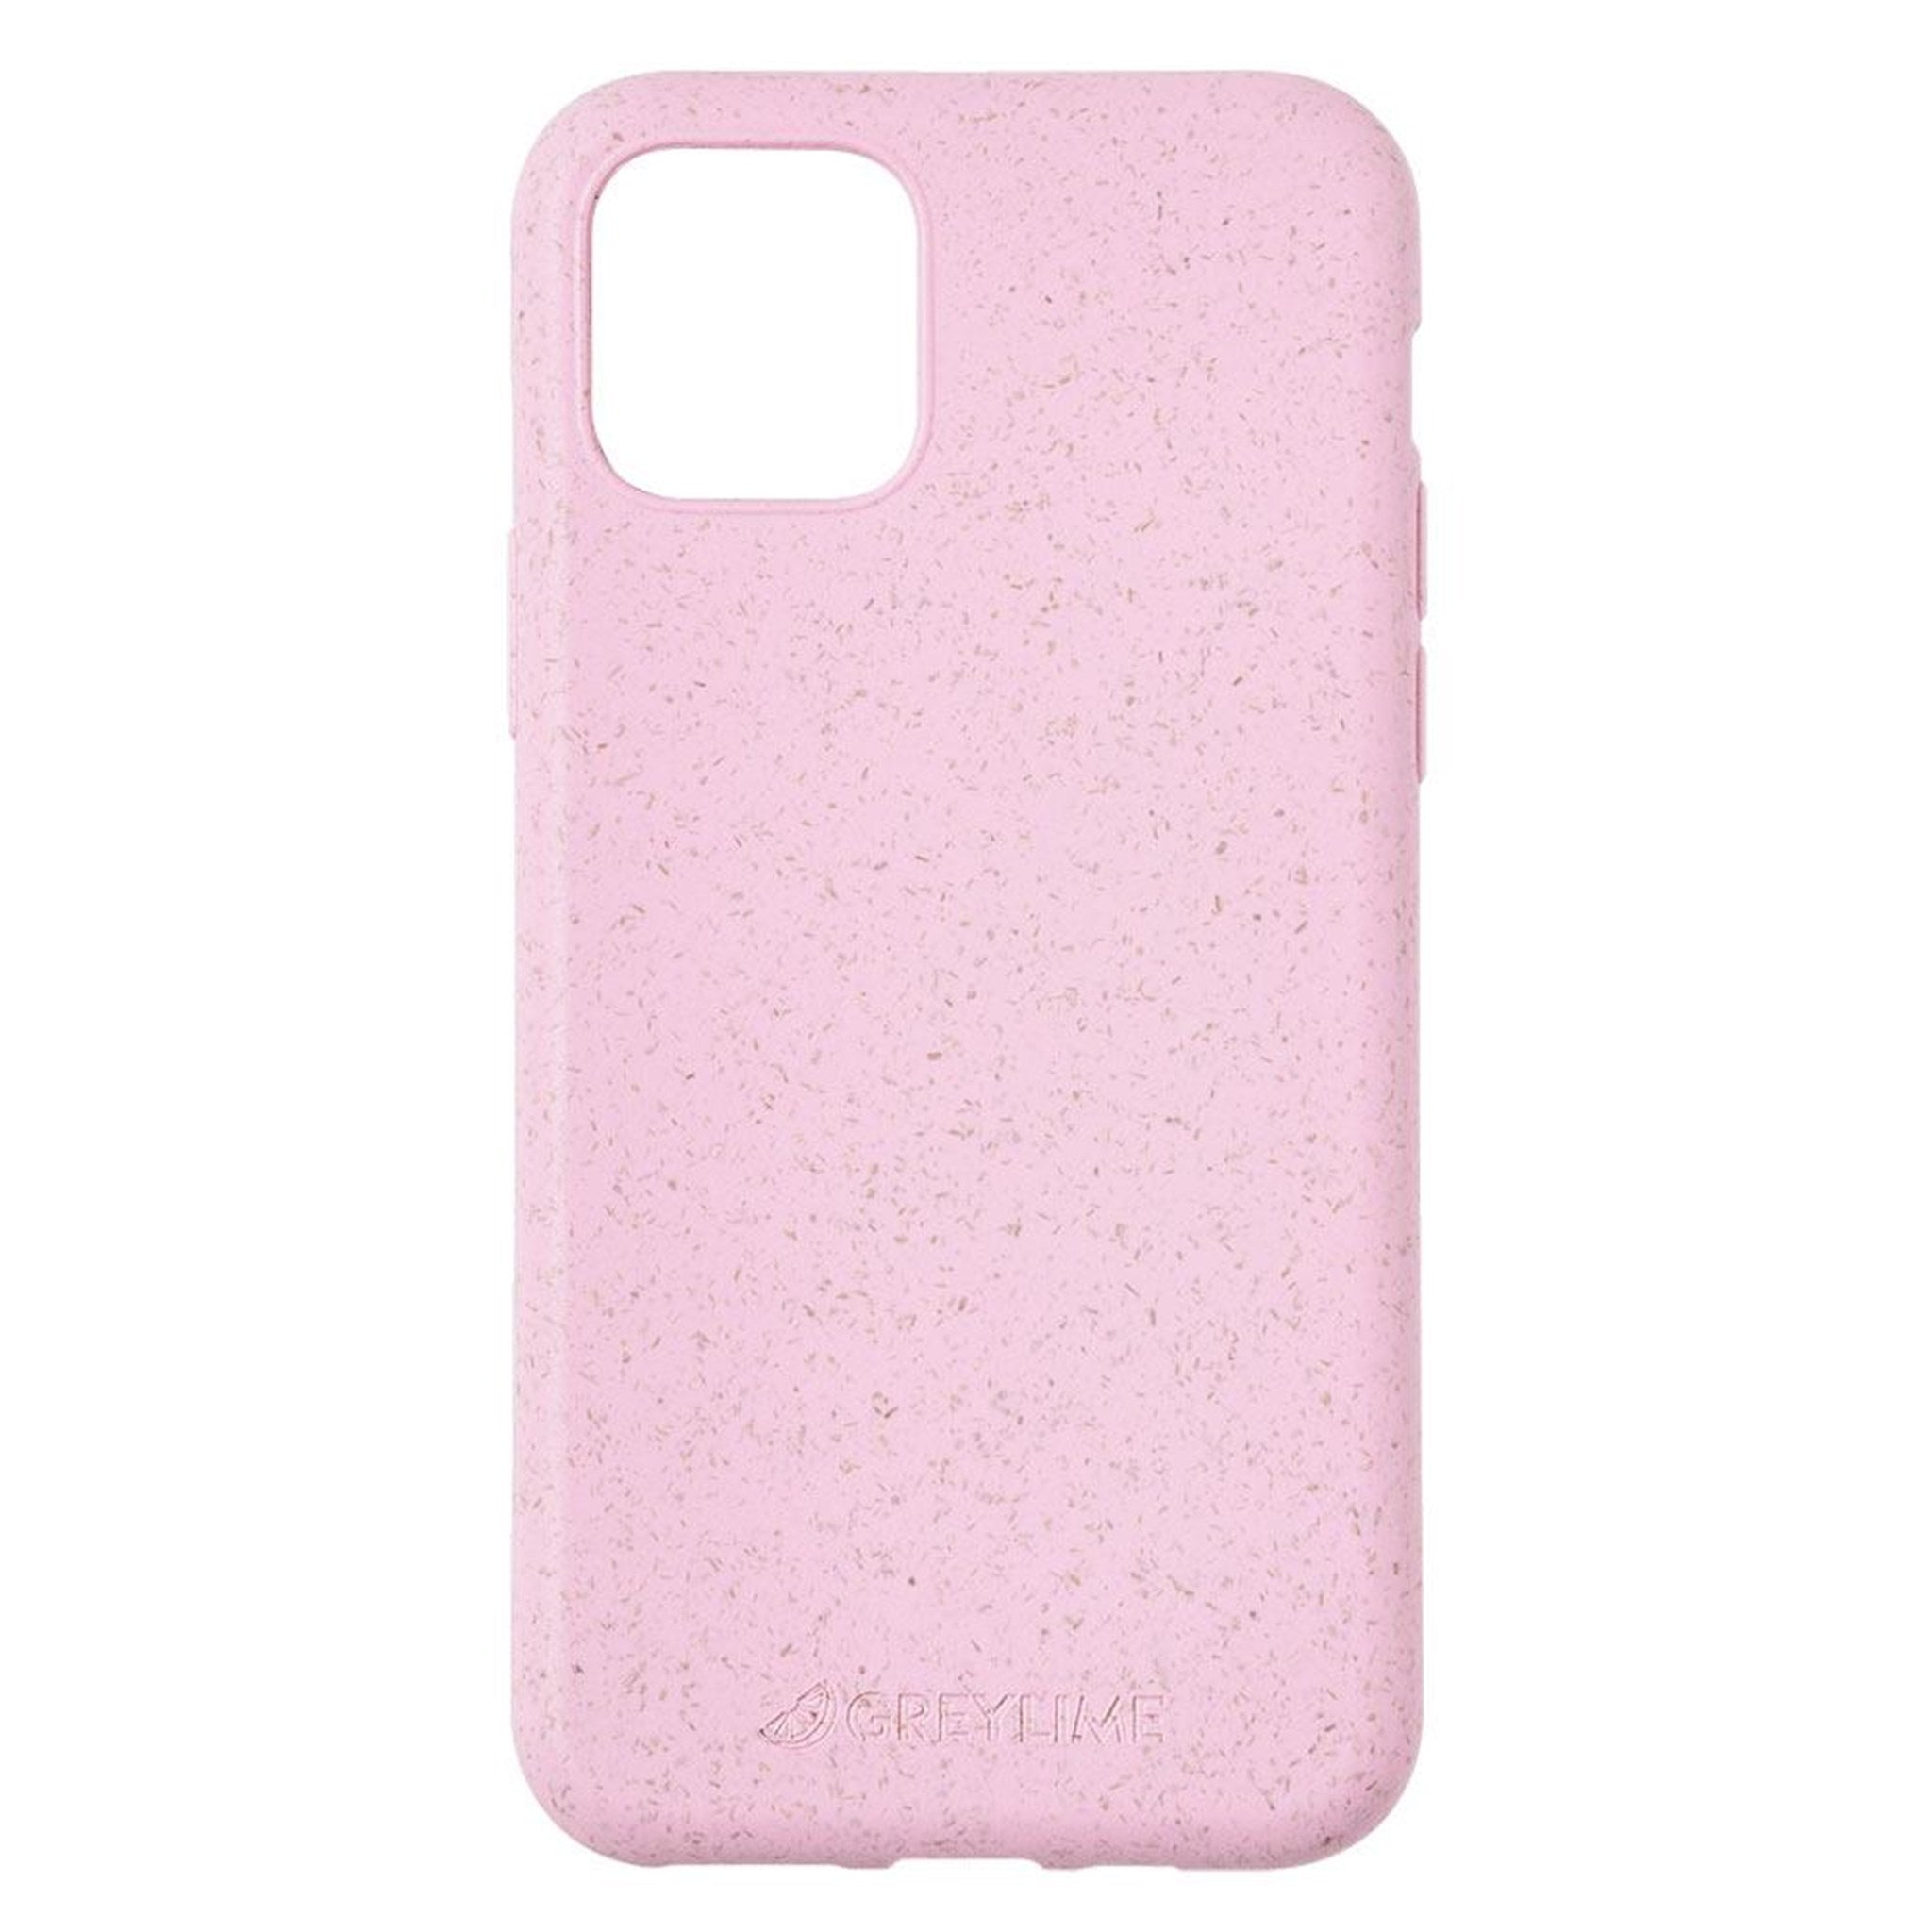 Se GreyLime iPhone 11 Pro Max miljøvenligt cover, Pink hos Balar